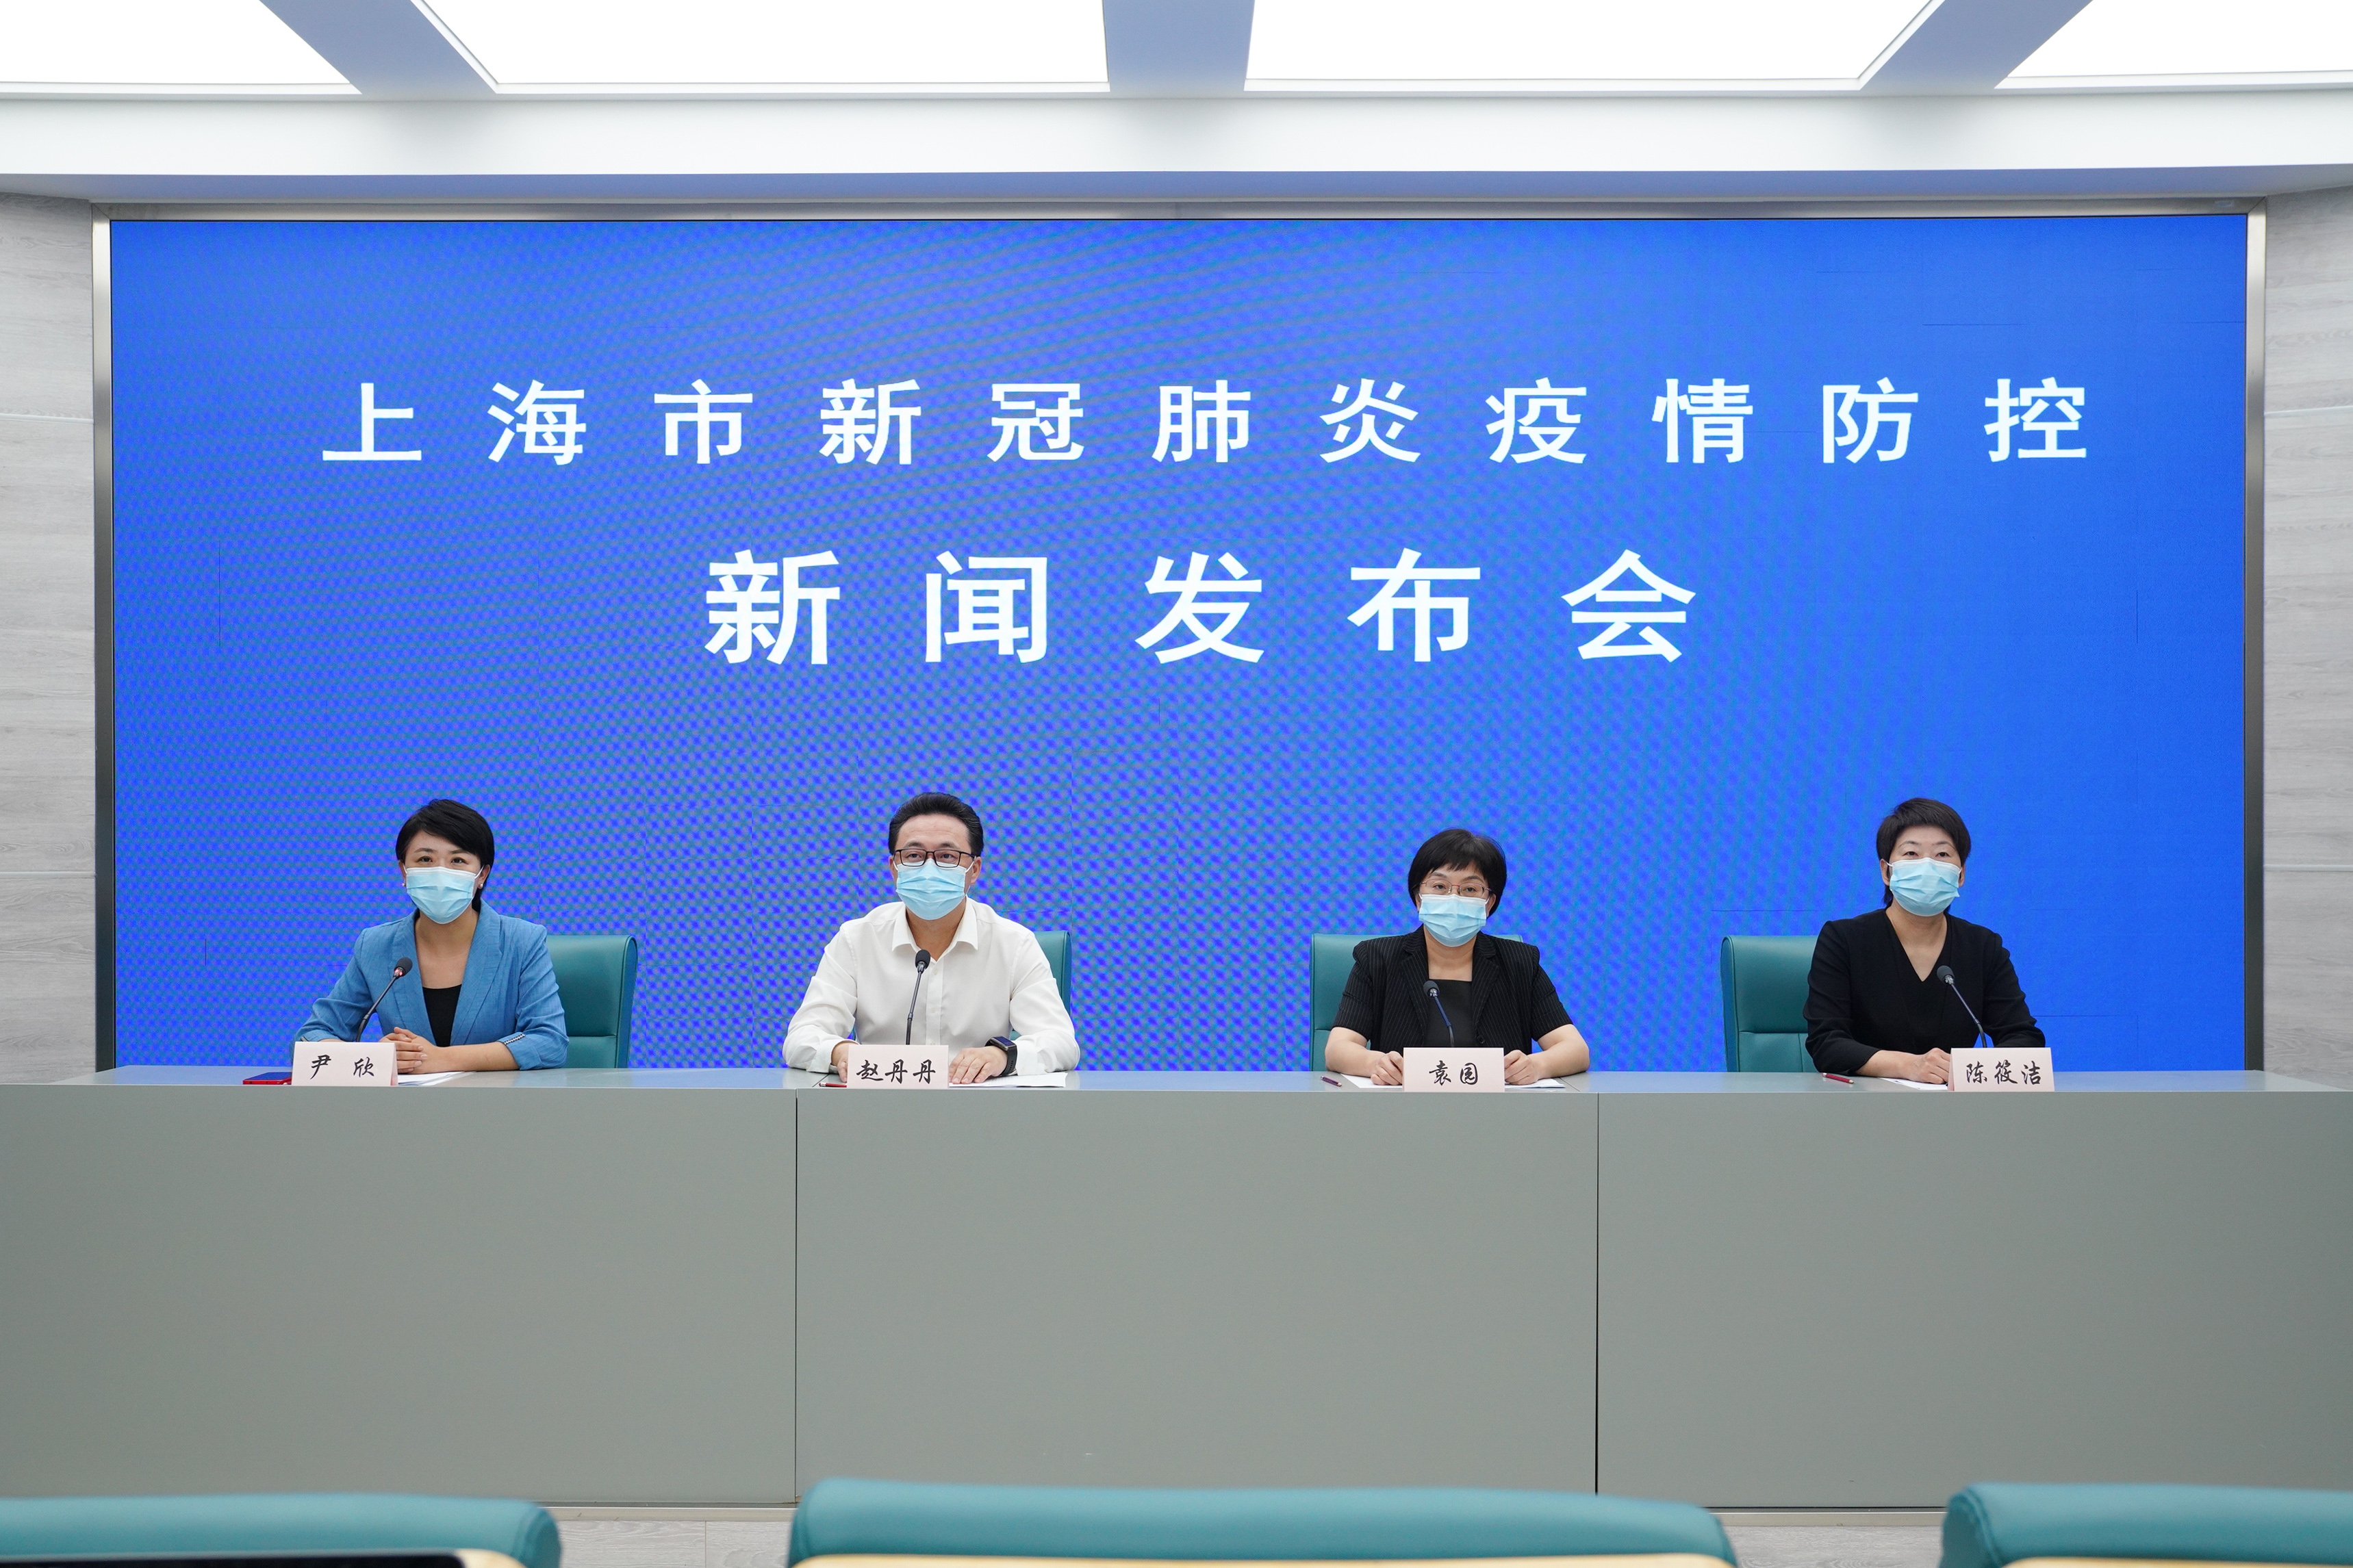 8月17日上海通报新冠肺炎防控情况